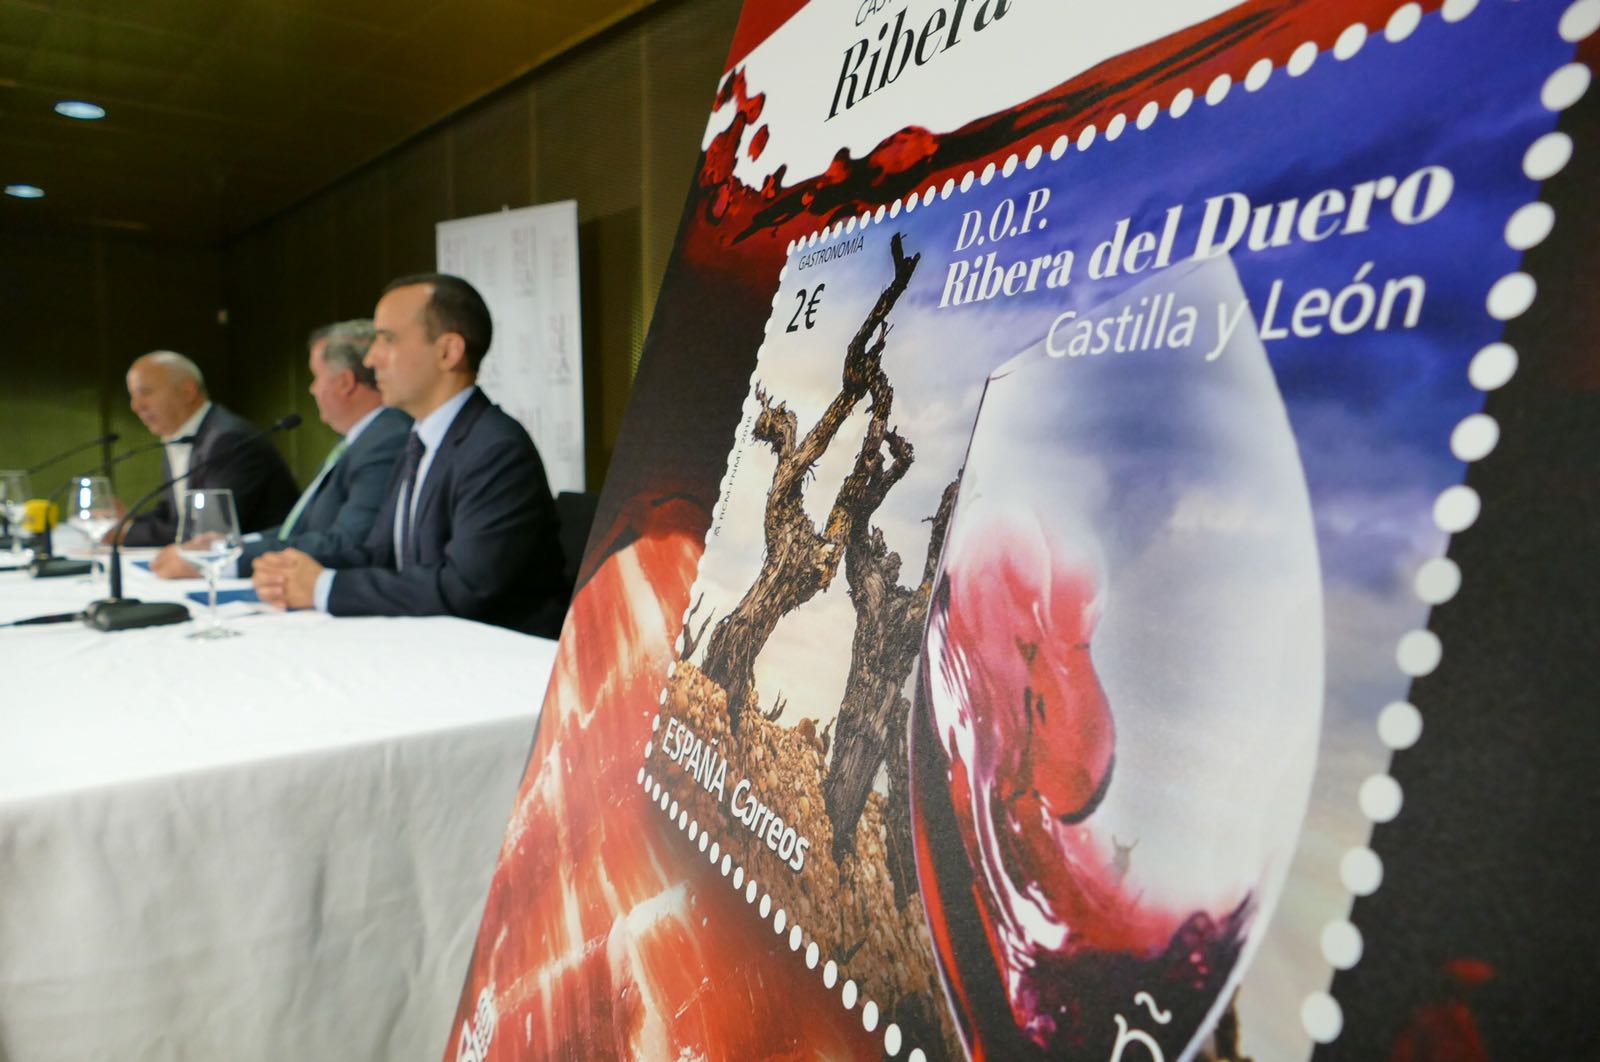 Imagen de la noticia Correos presentan el sello dedicado a la D.O.P. Ribera del Duero